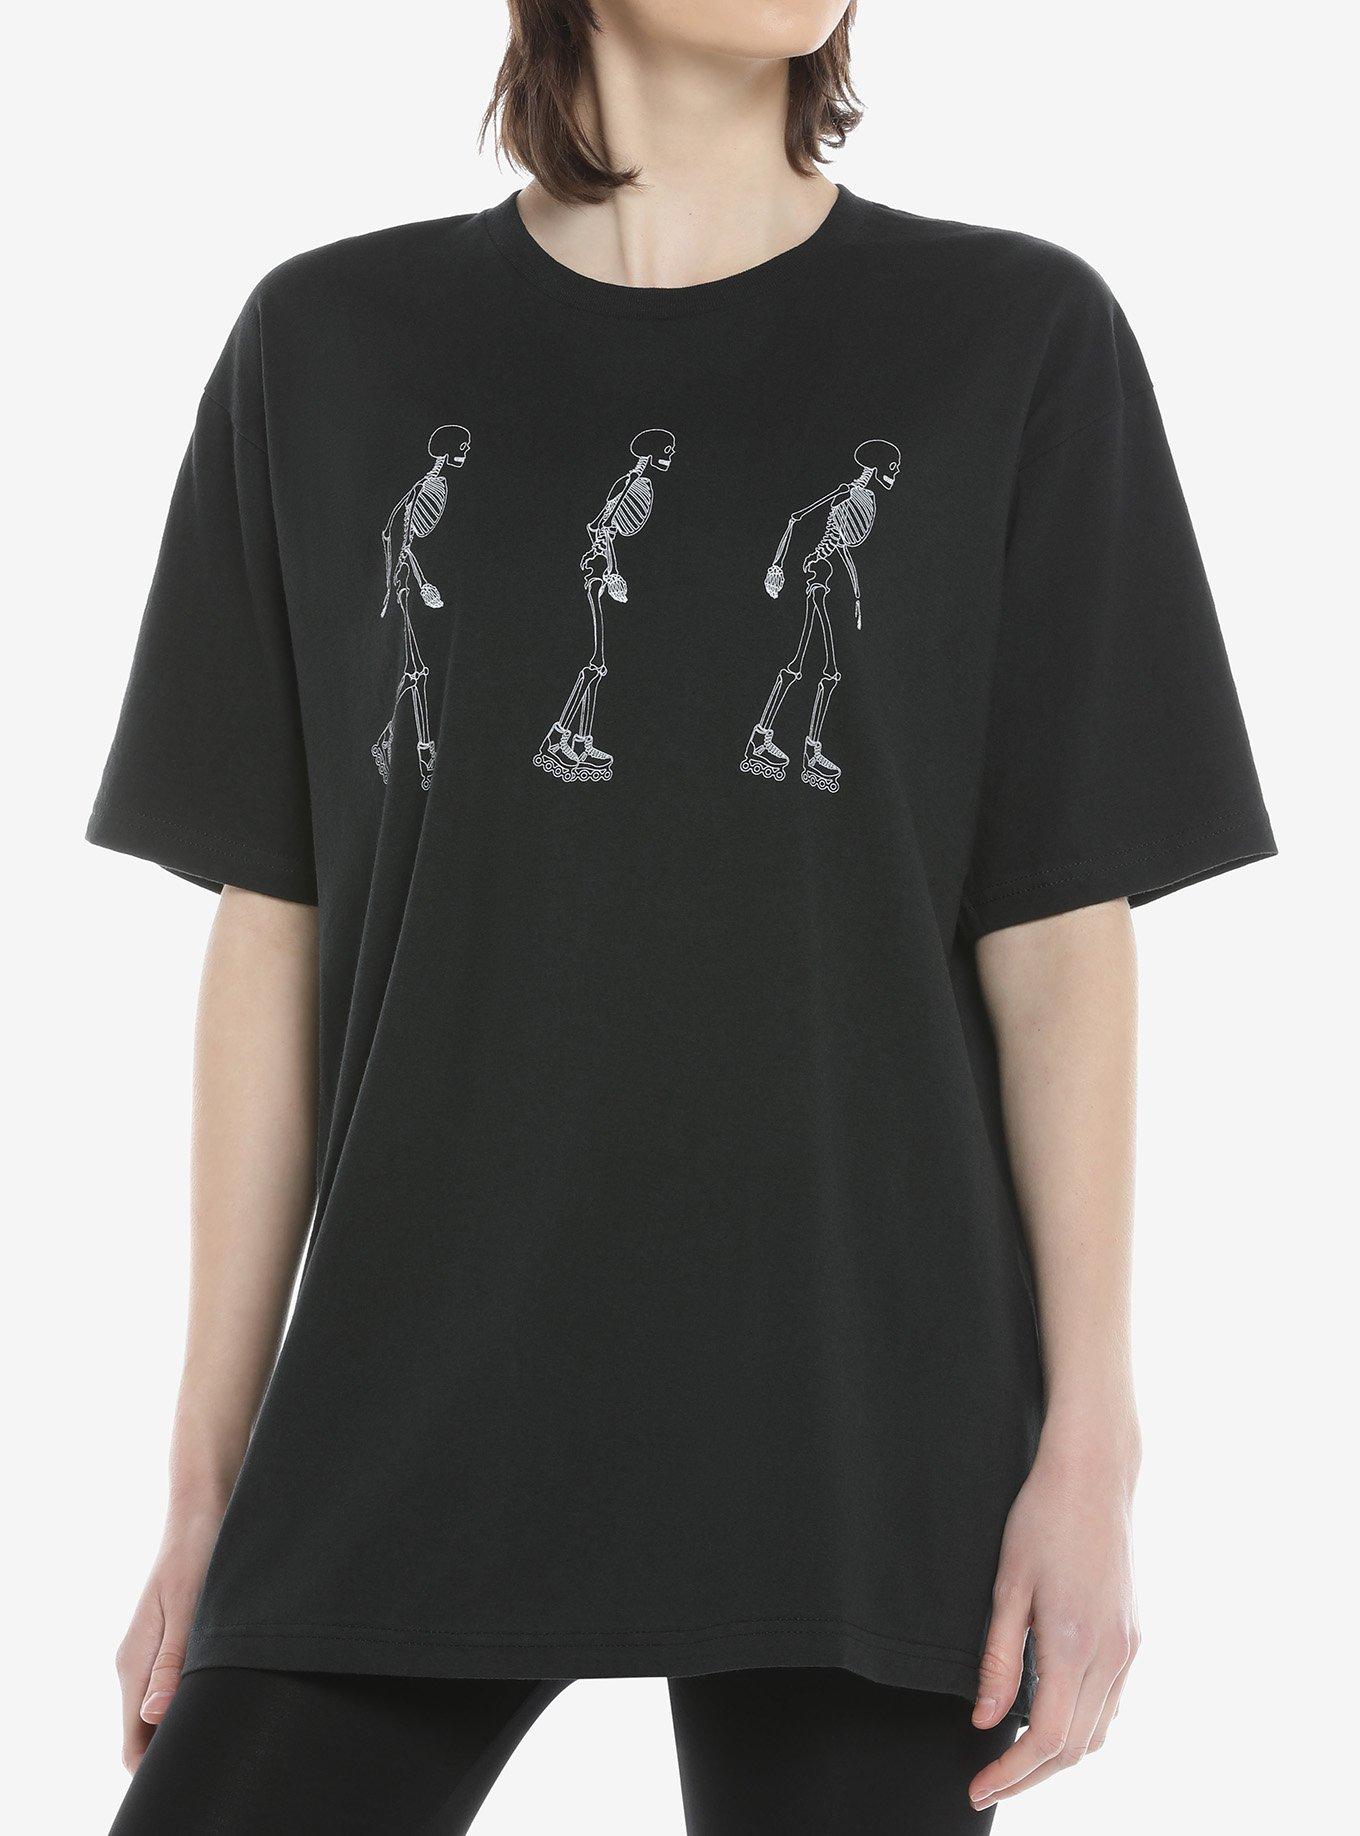 Skeleton Skate Oversized Girls T-Shirt, WHITE, hi-res